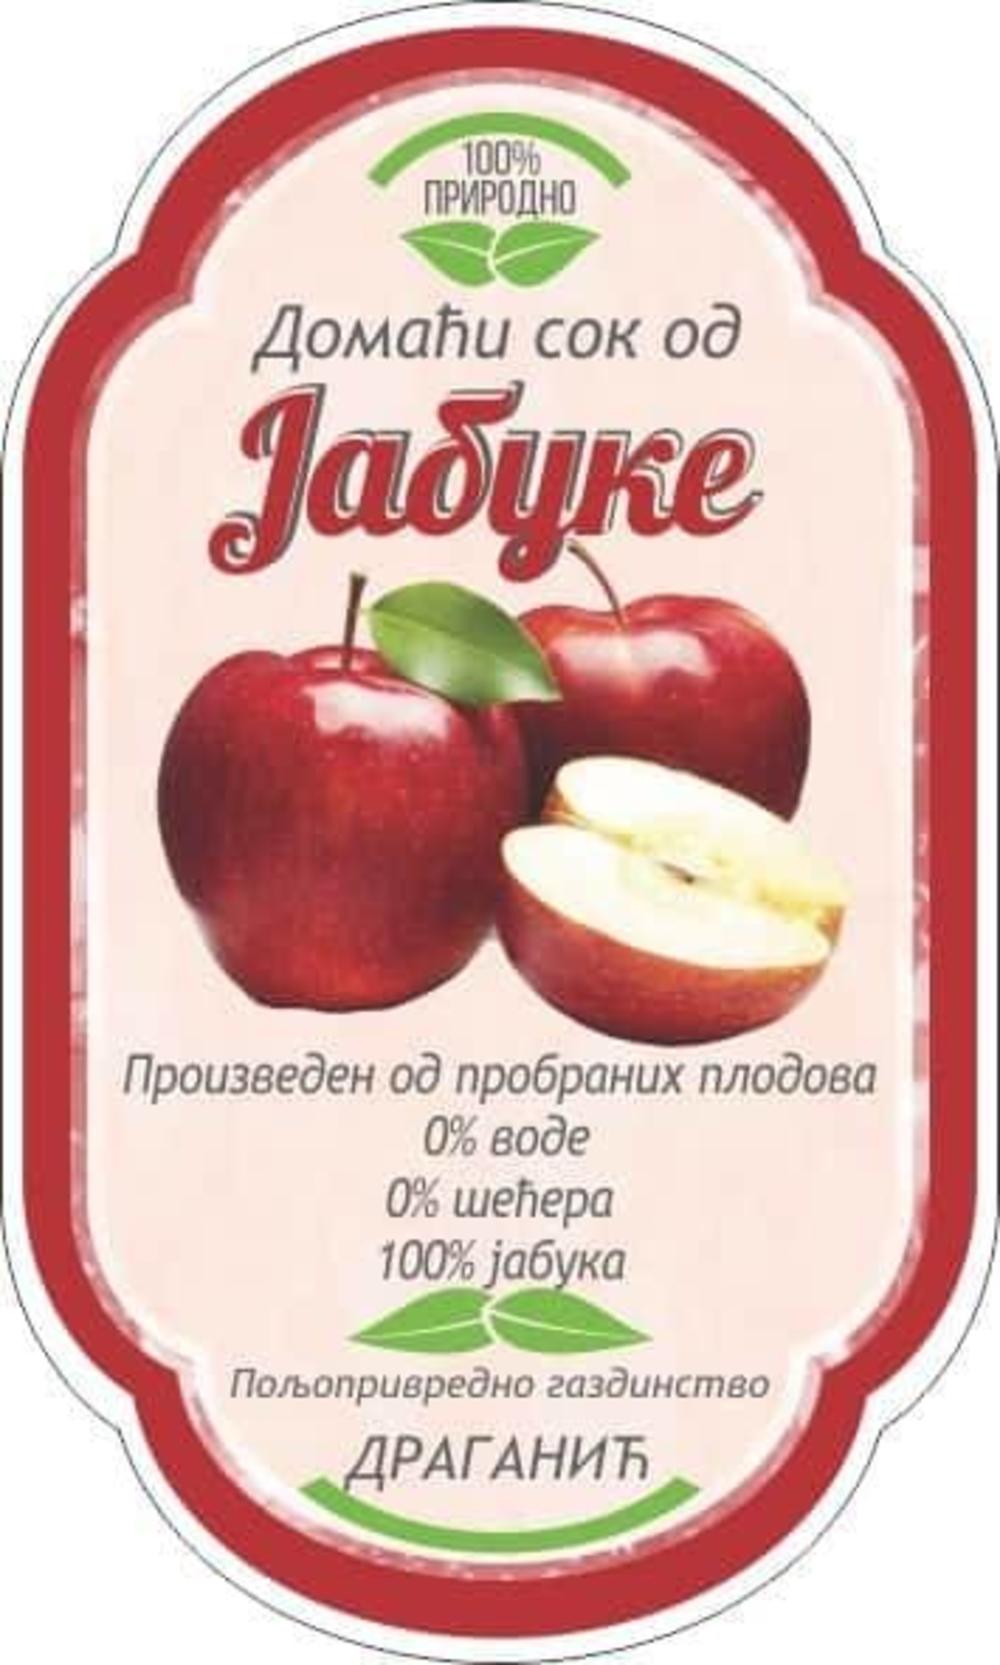 Ceđeni sok od stare autohtone jabuke budimke i kožare, etiketa  